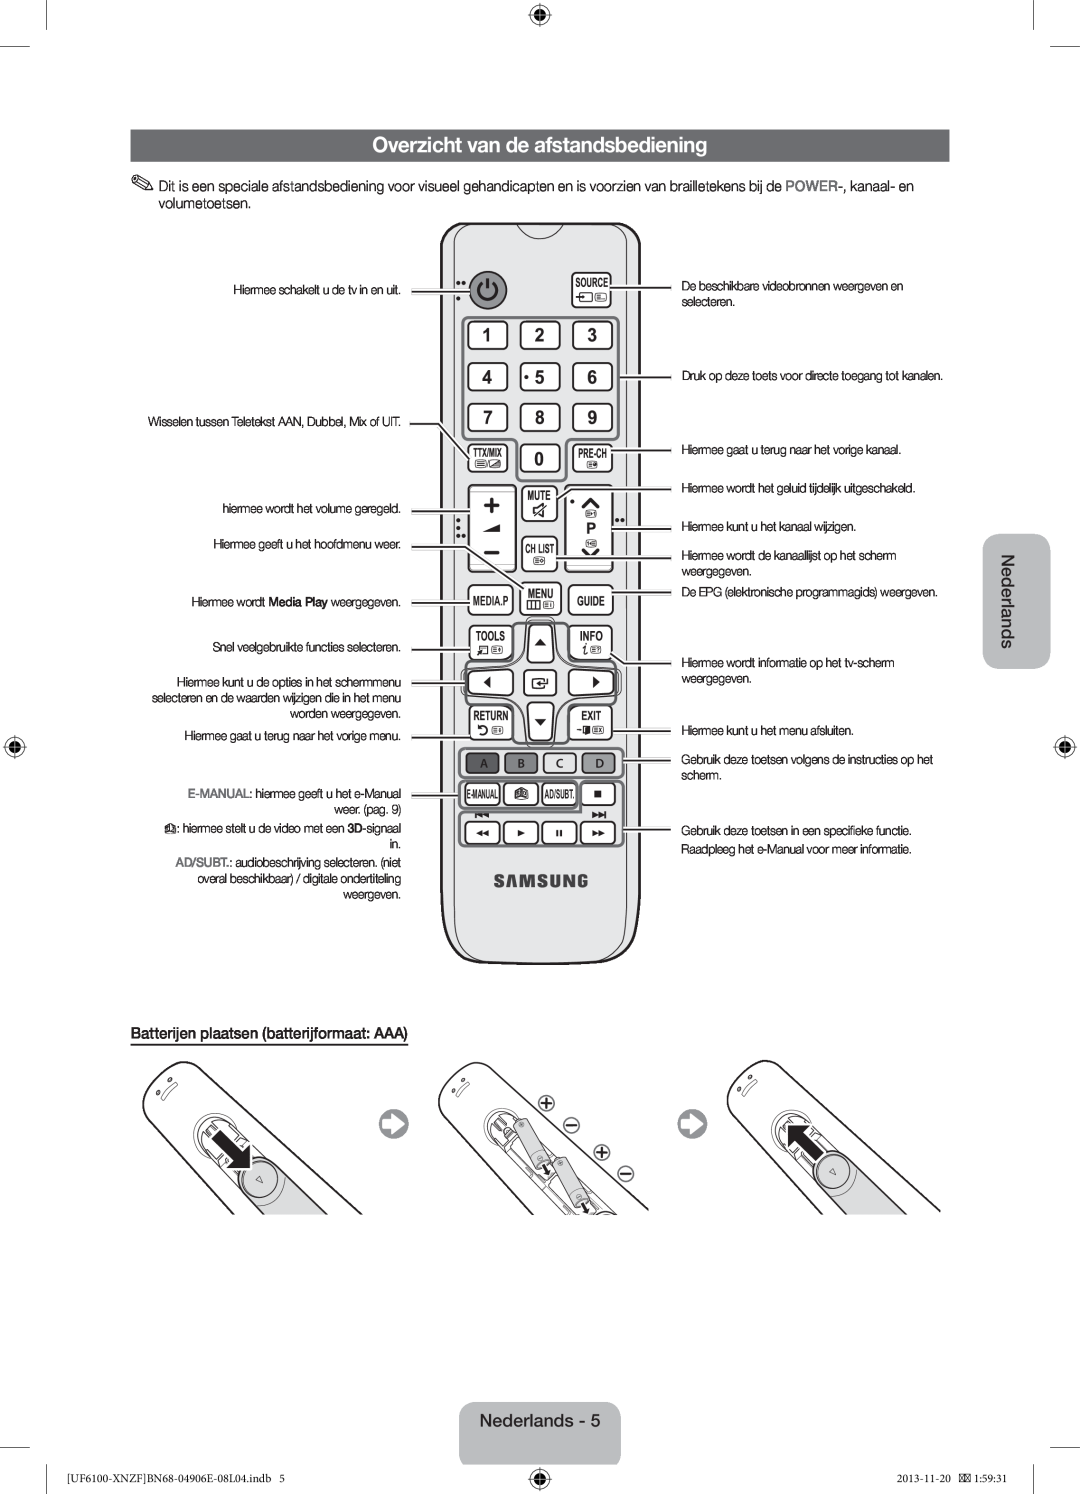 Samsung UE60F6100AWXXC manual Overzicht van de afstandsbediening, Batterijen plaatsen batterijformaat AAA, Nederlands 